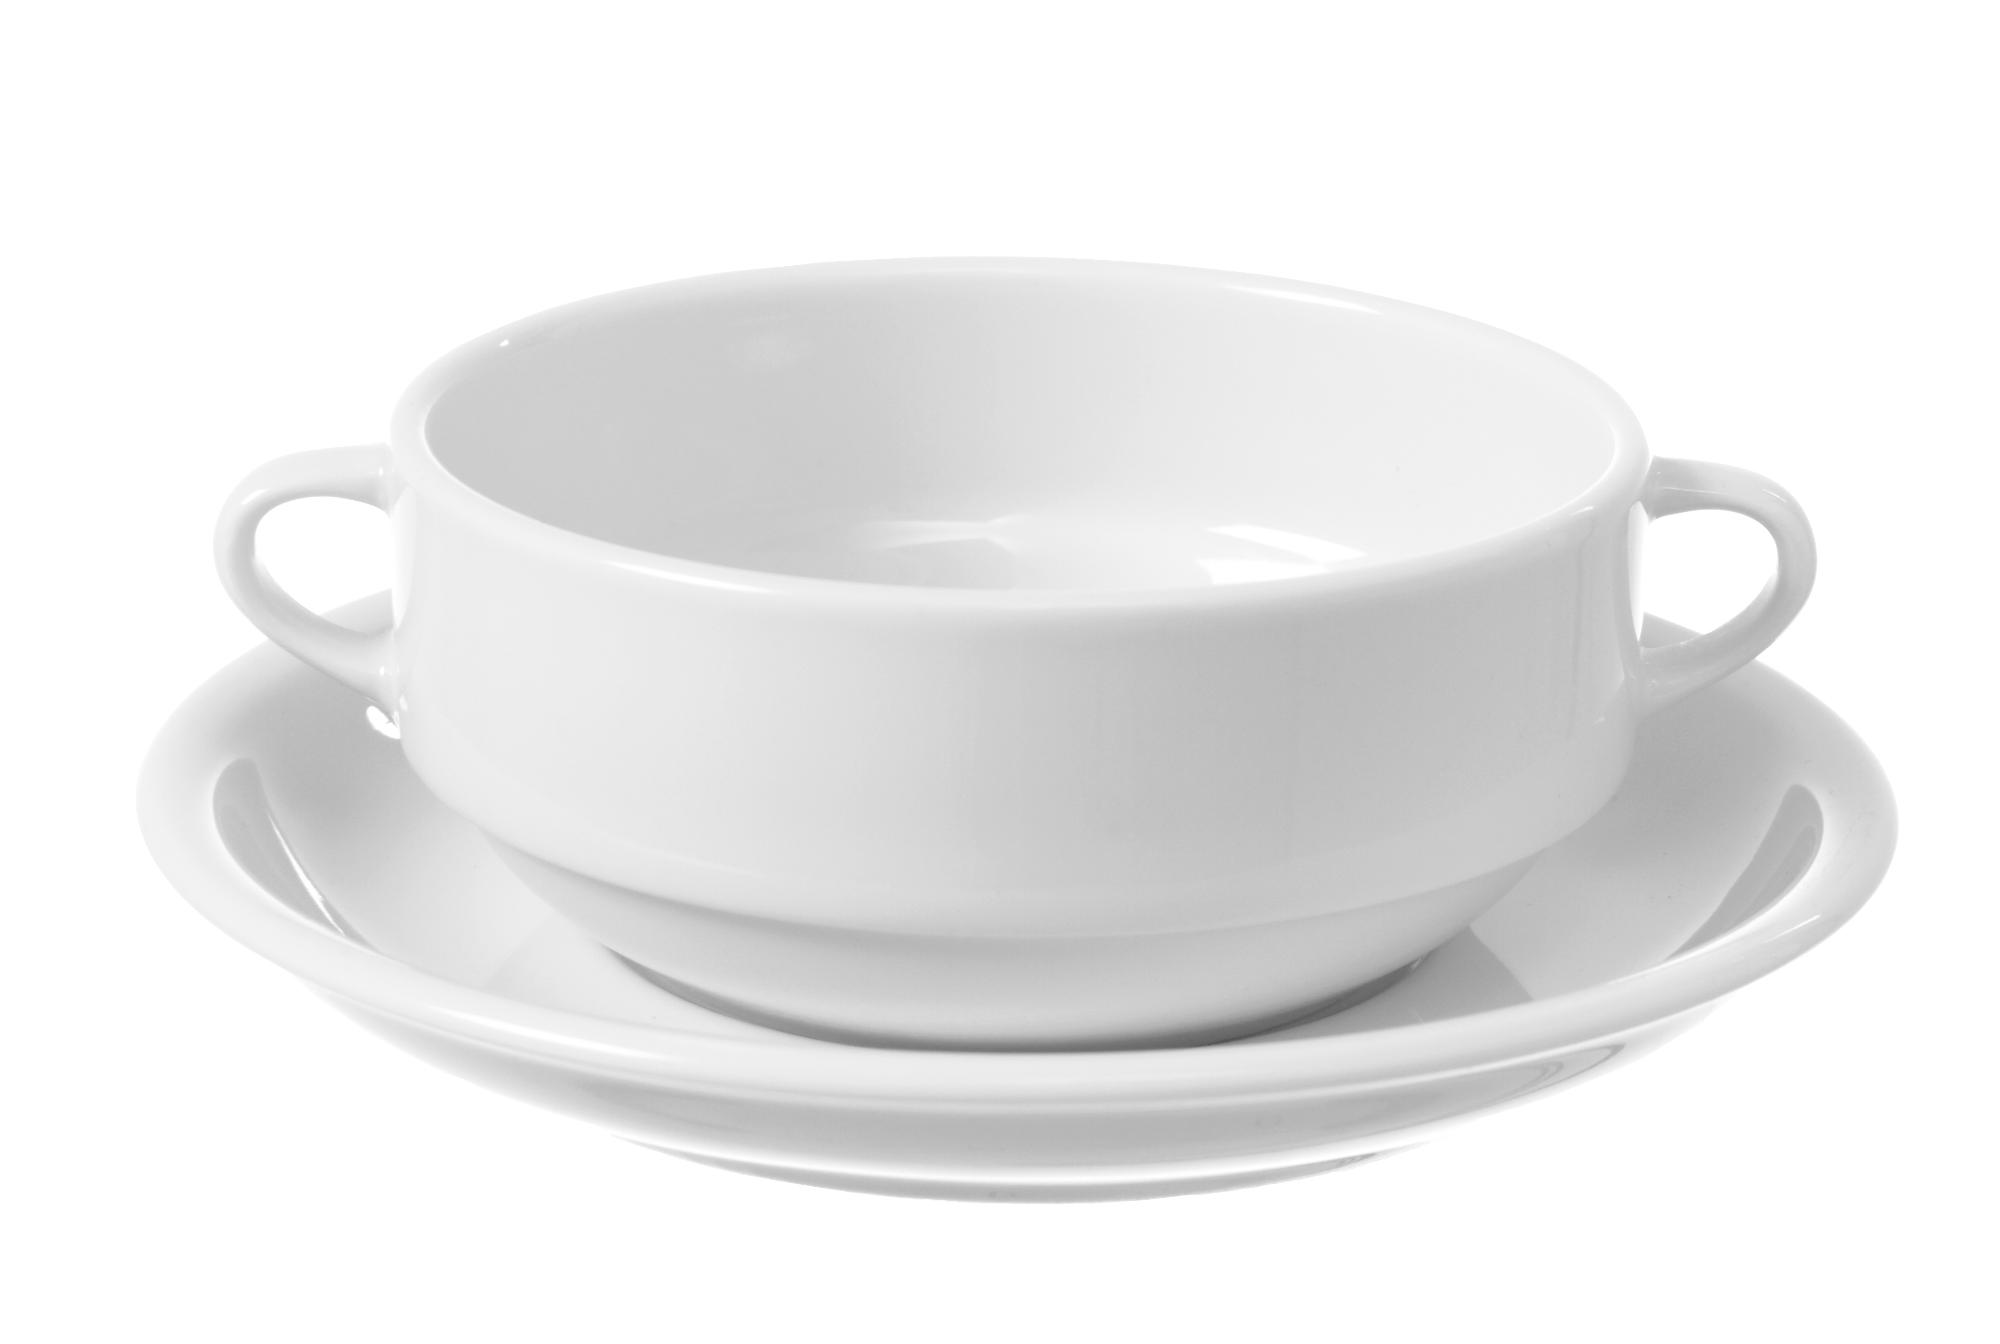 Bianco soup bowl, 300ml